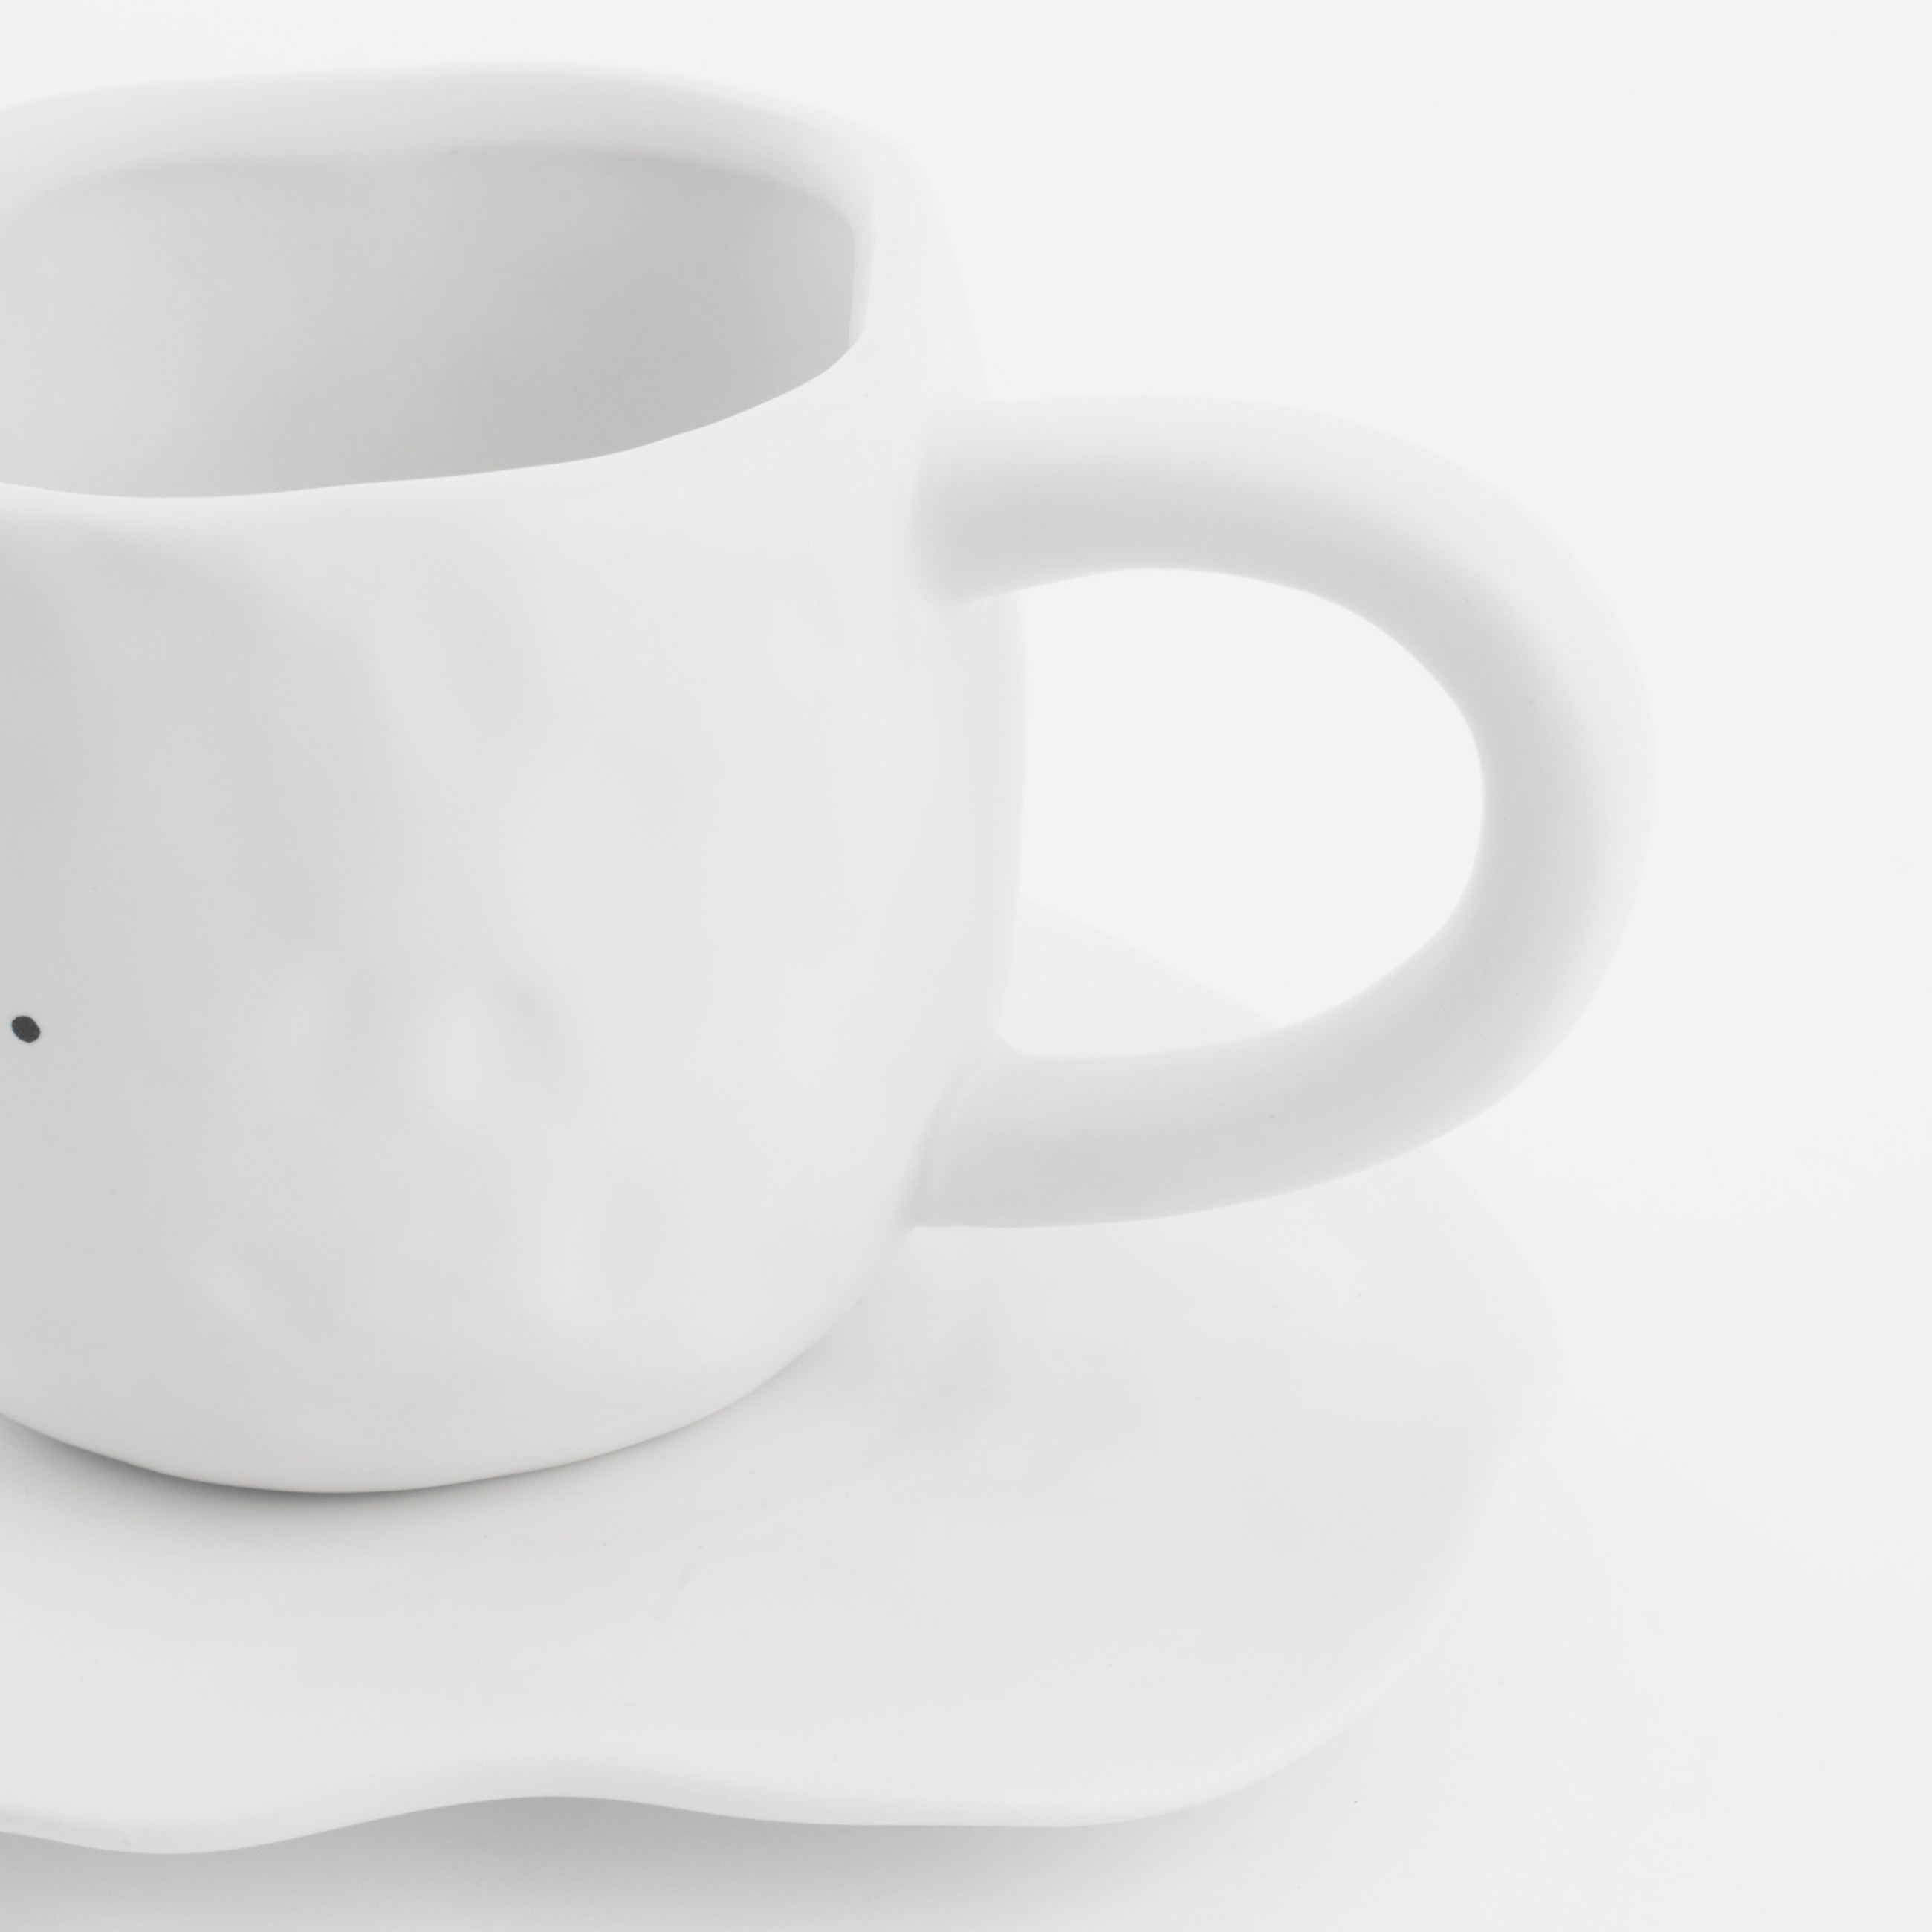 Пара чайная, 1 перс, 2 пр, 420 мл, керамика, белая, Pause, Crumple font изображение № 2